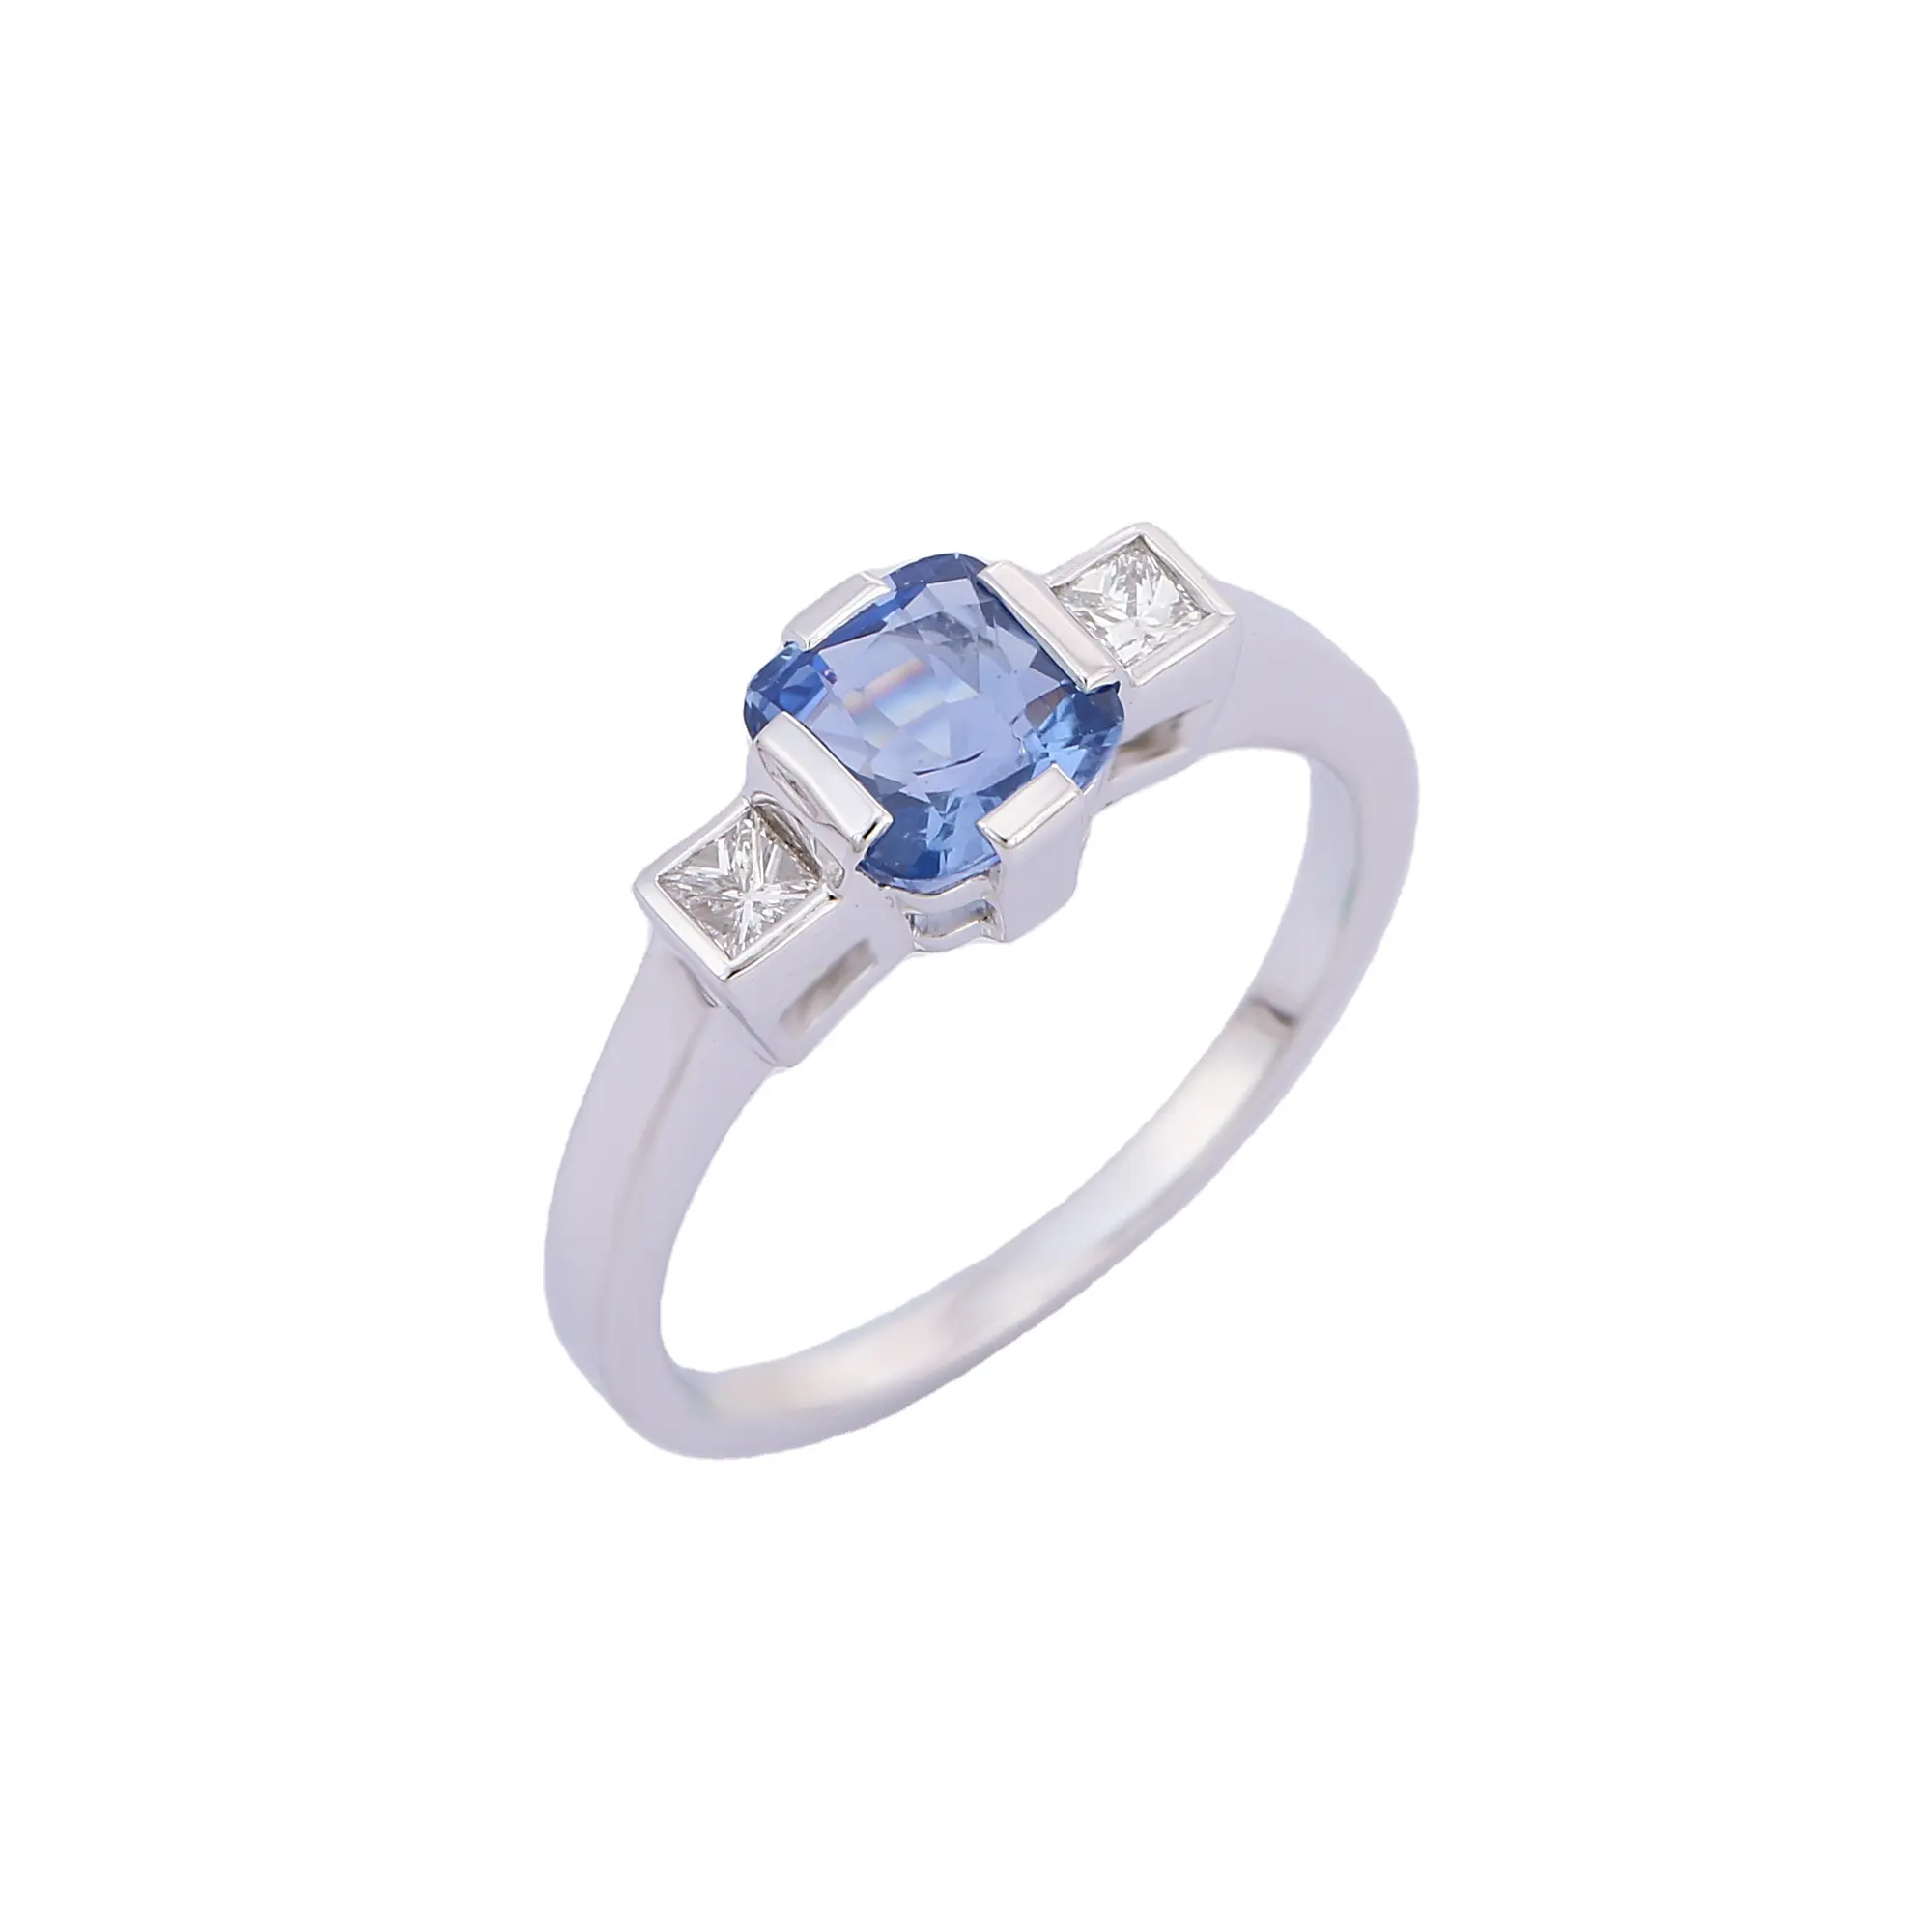 럭셔리 쥬얼리 천연 블루 사파이어 쿠션 모양 다이아몬드 반지 18K 솔리드 화이트 골드 반지 도매 기념일 선물